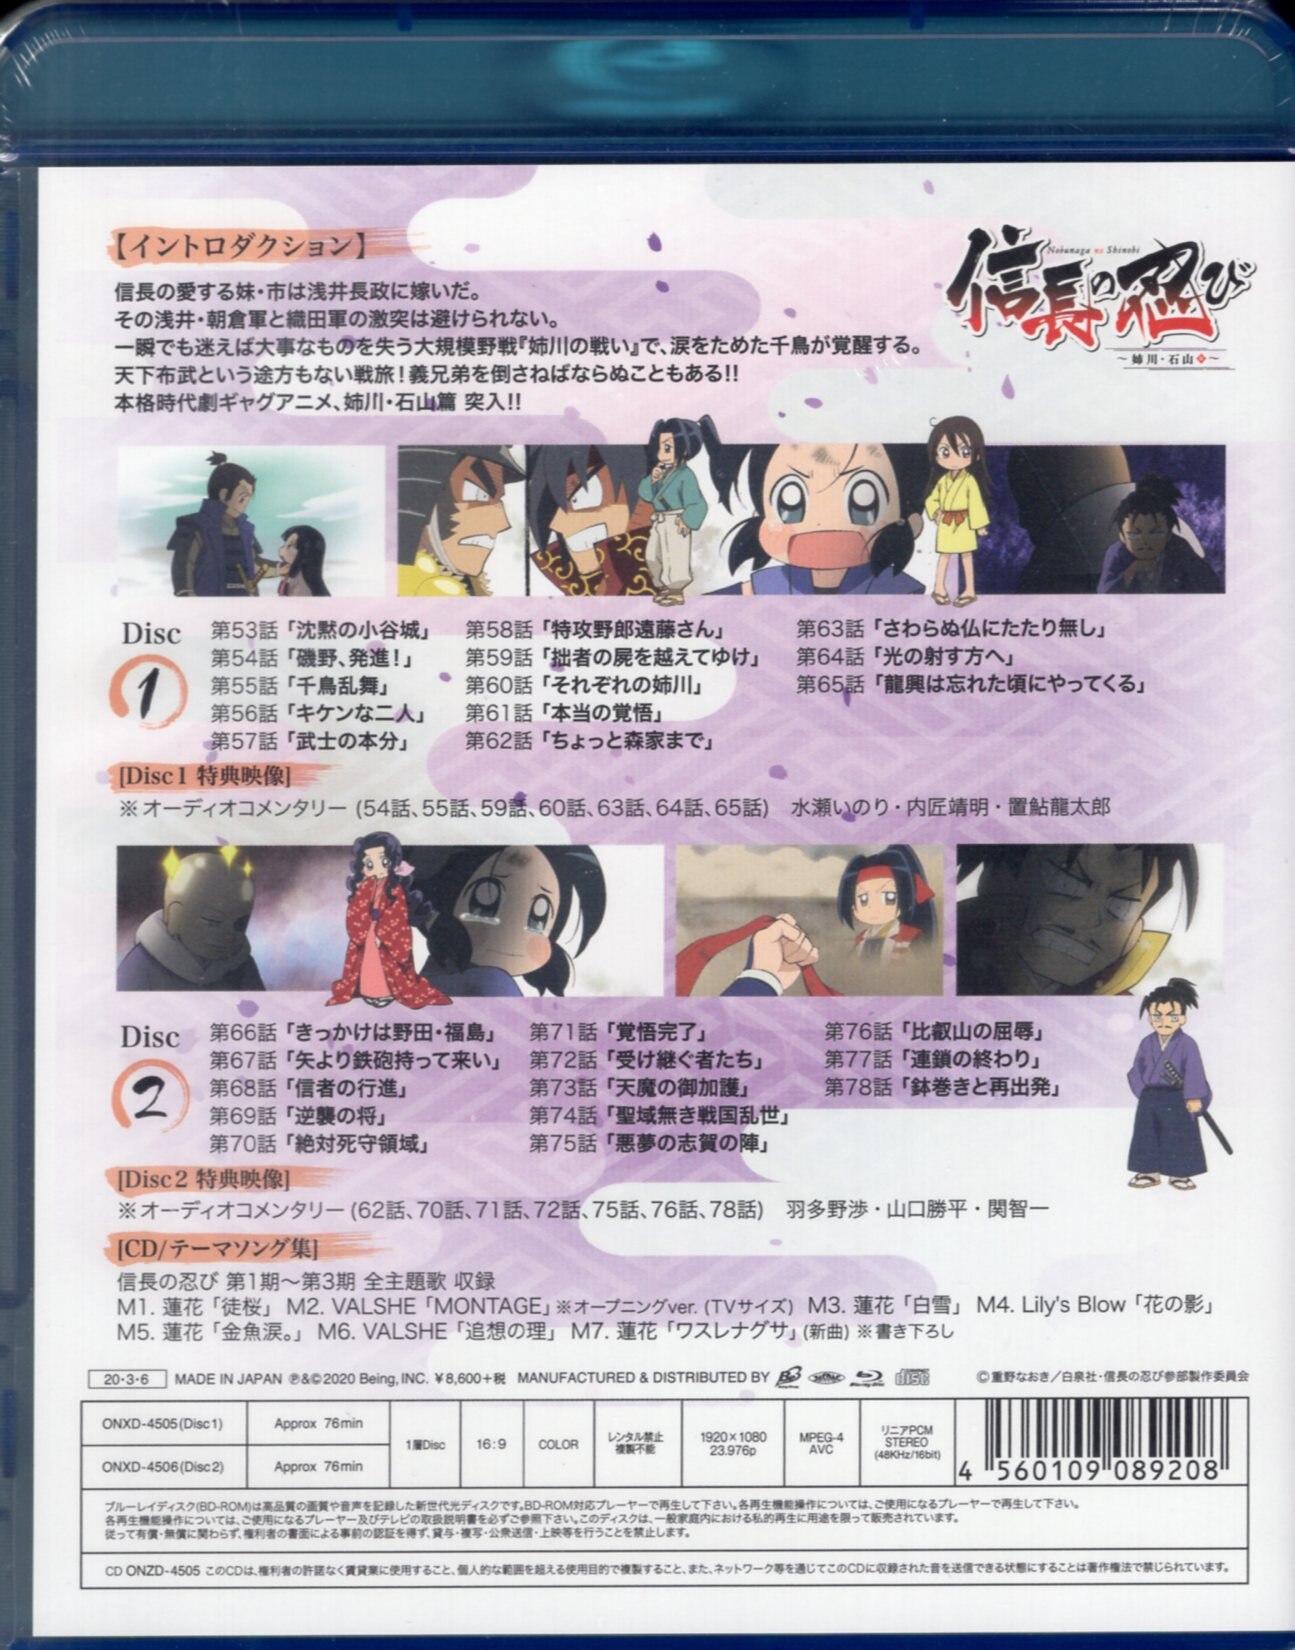 ビーイング アニメBlu-ray 信長の忍び ~姉川・石山篇~ Blu-ray BOX